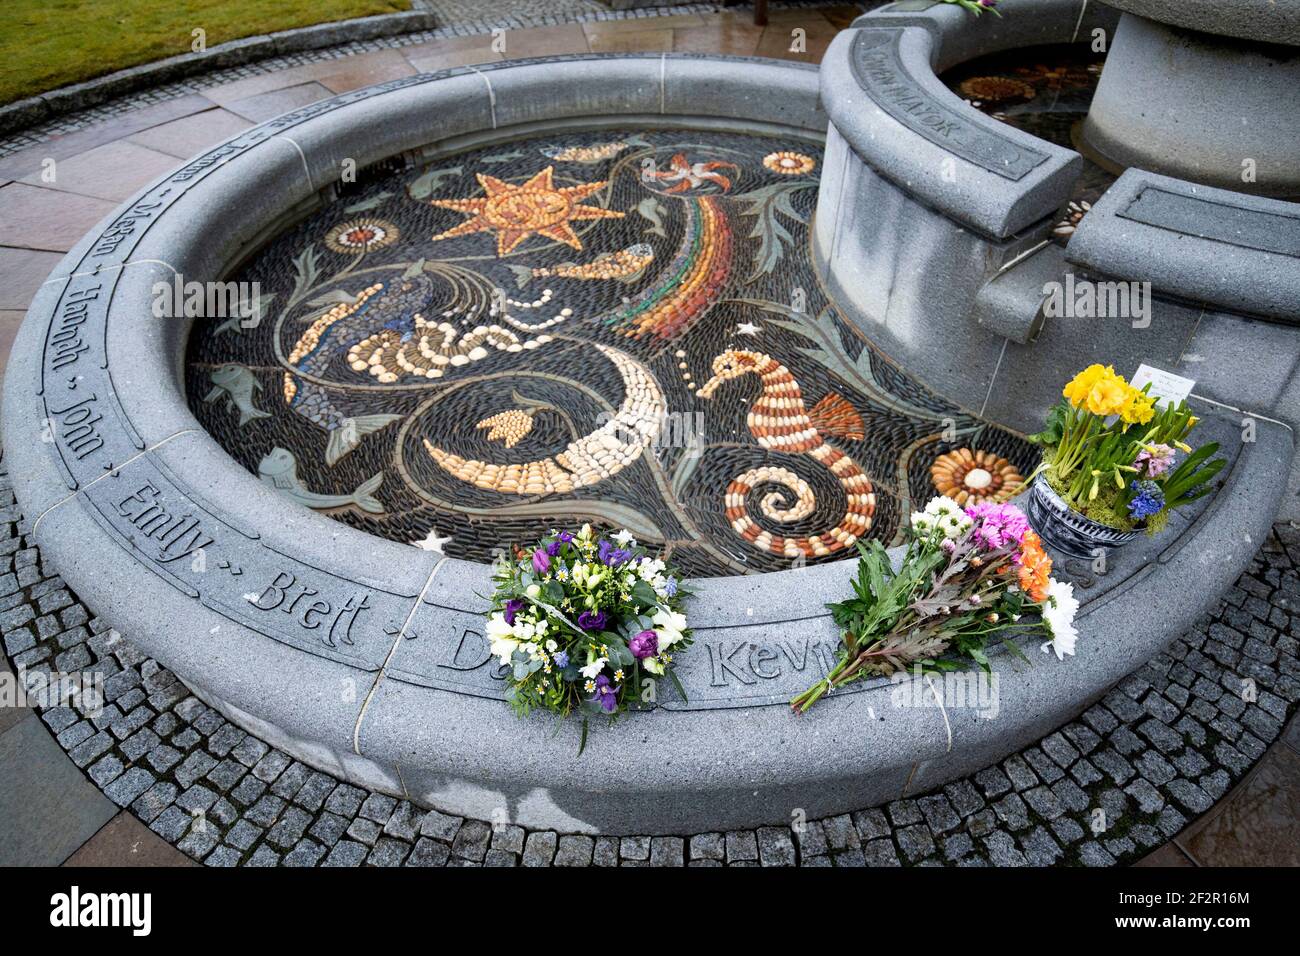 Blumengebete, die vor dem 25th. Jahrestag der Schießerei am Samstag im Gedenkbrunnen auf dem Friedhof von Dunblane für die Opfer des Massakers von Dunblane hinterlassen wurden. Bilddatum: Freitag, 12. März 2021. Stockfoto